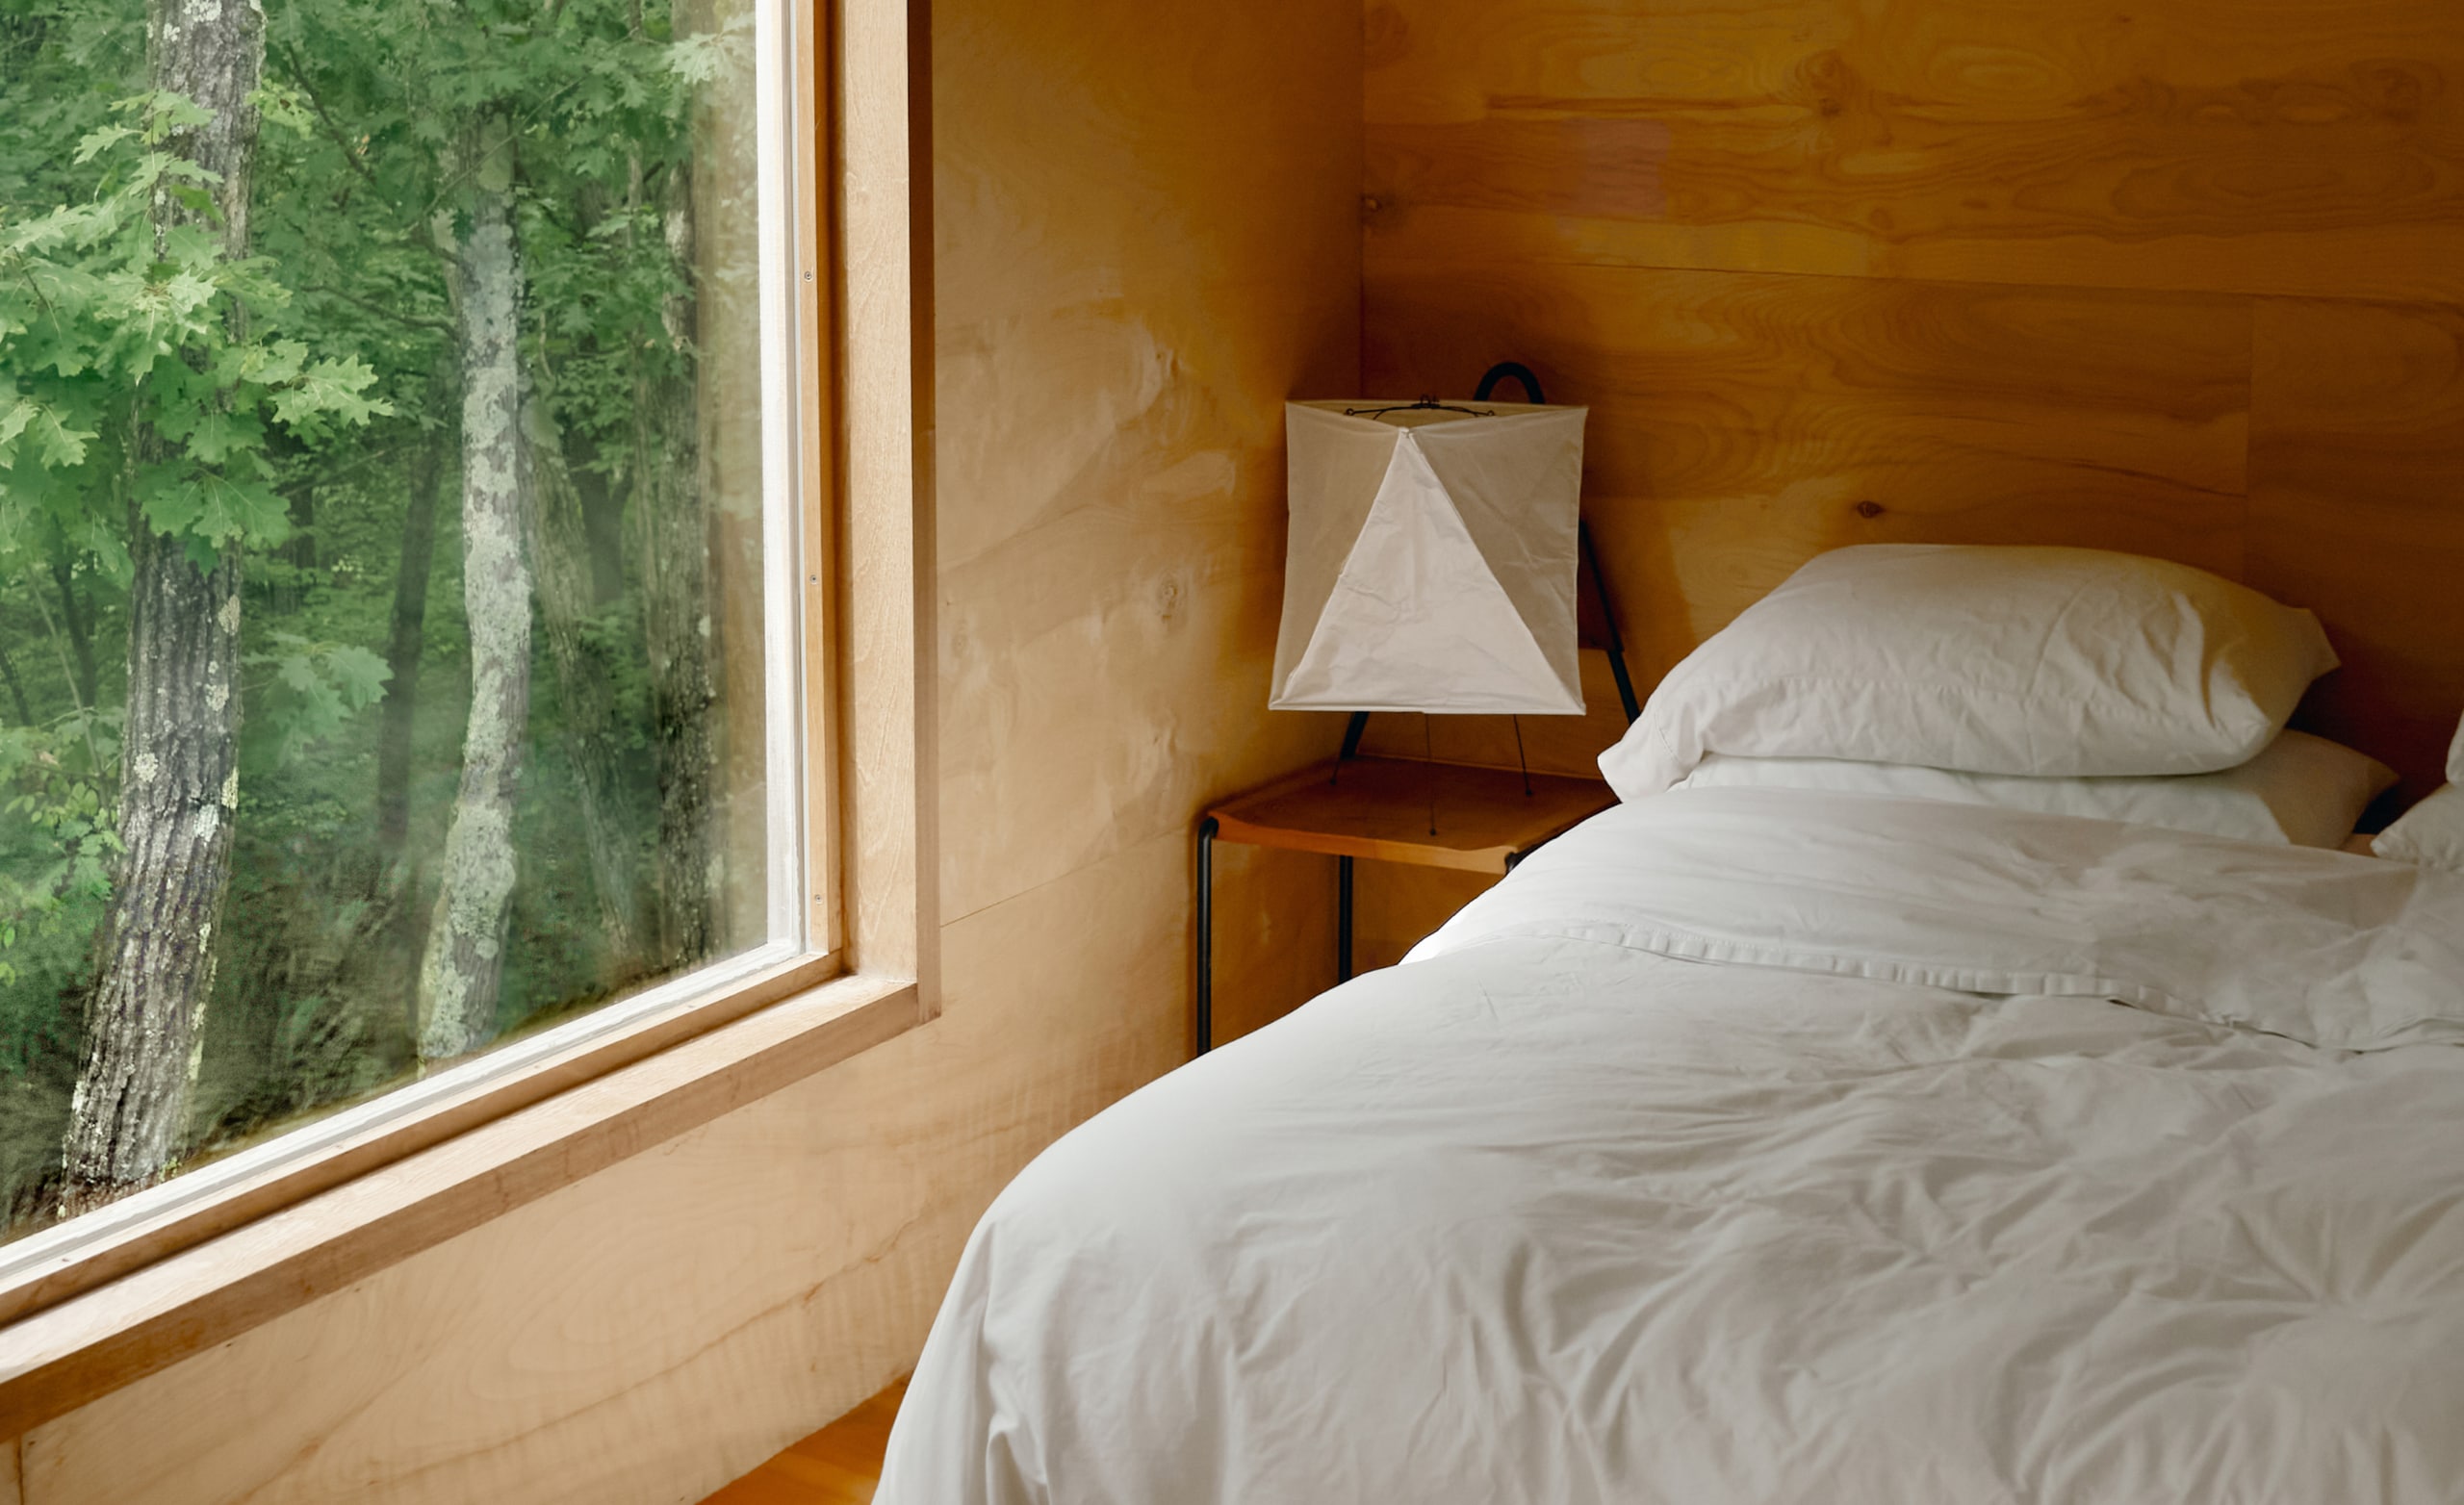 Sypialnia z białymi prześcieradłami na świeżo pościelonym łóżku i dużym oknem z drzewami na zewnątrz.